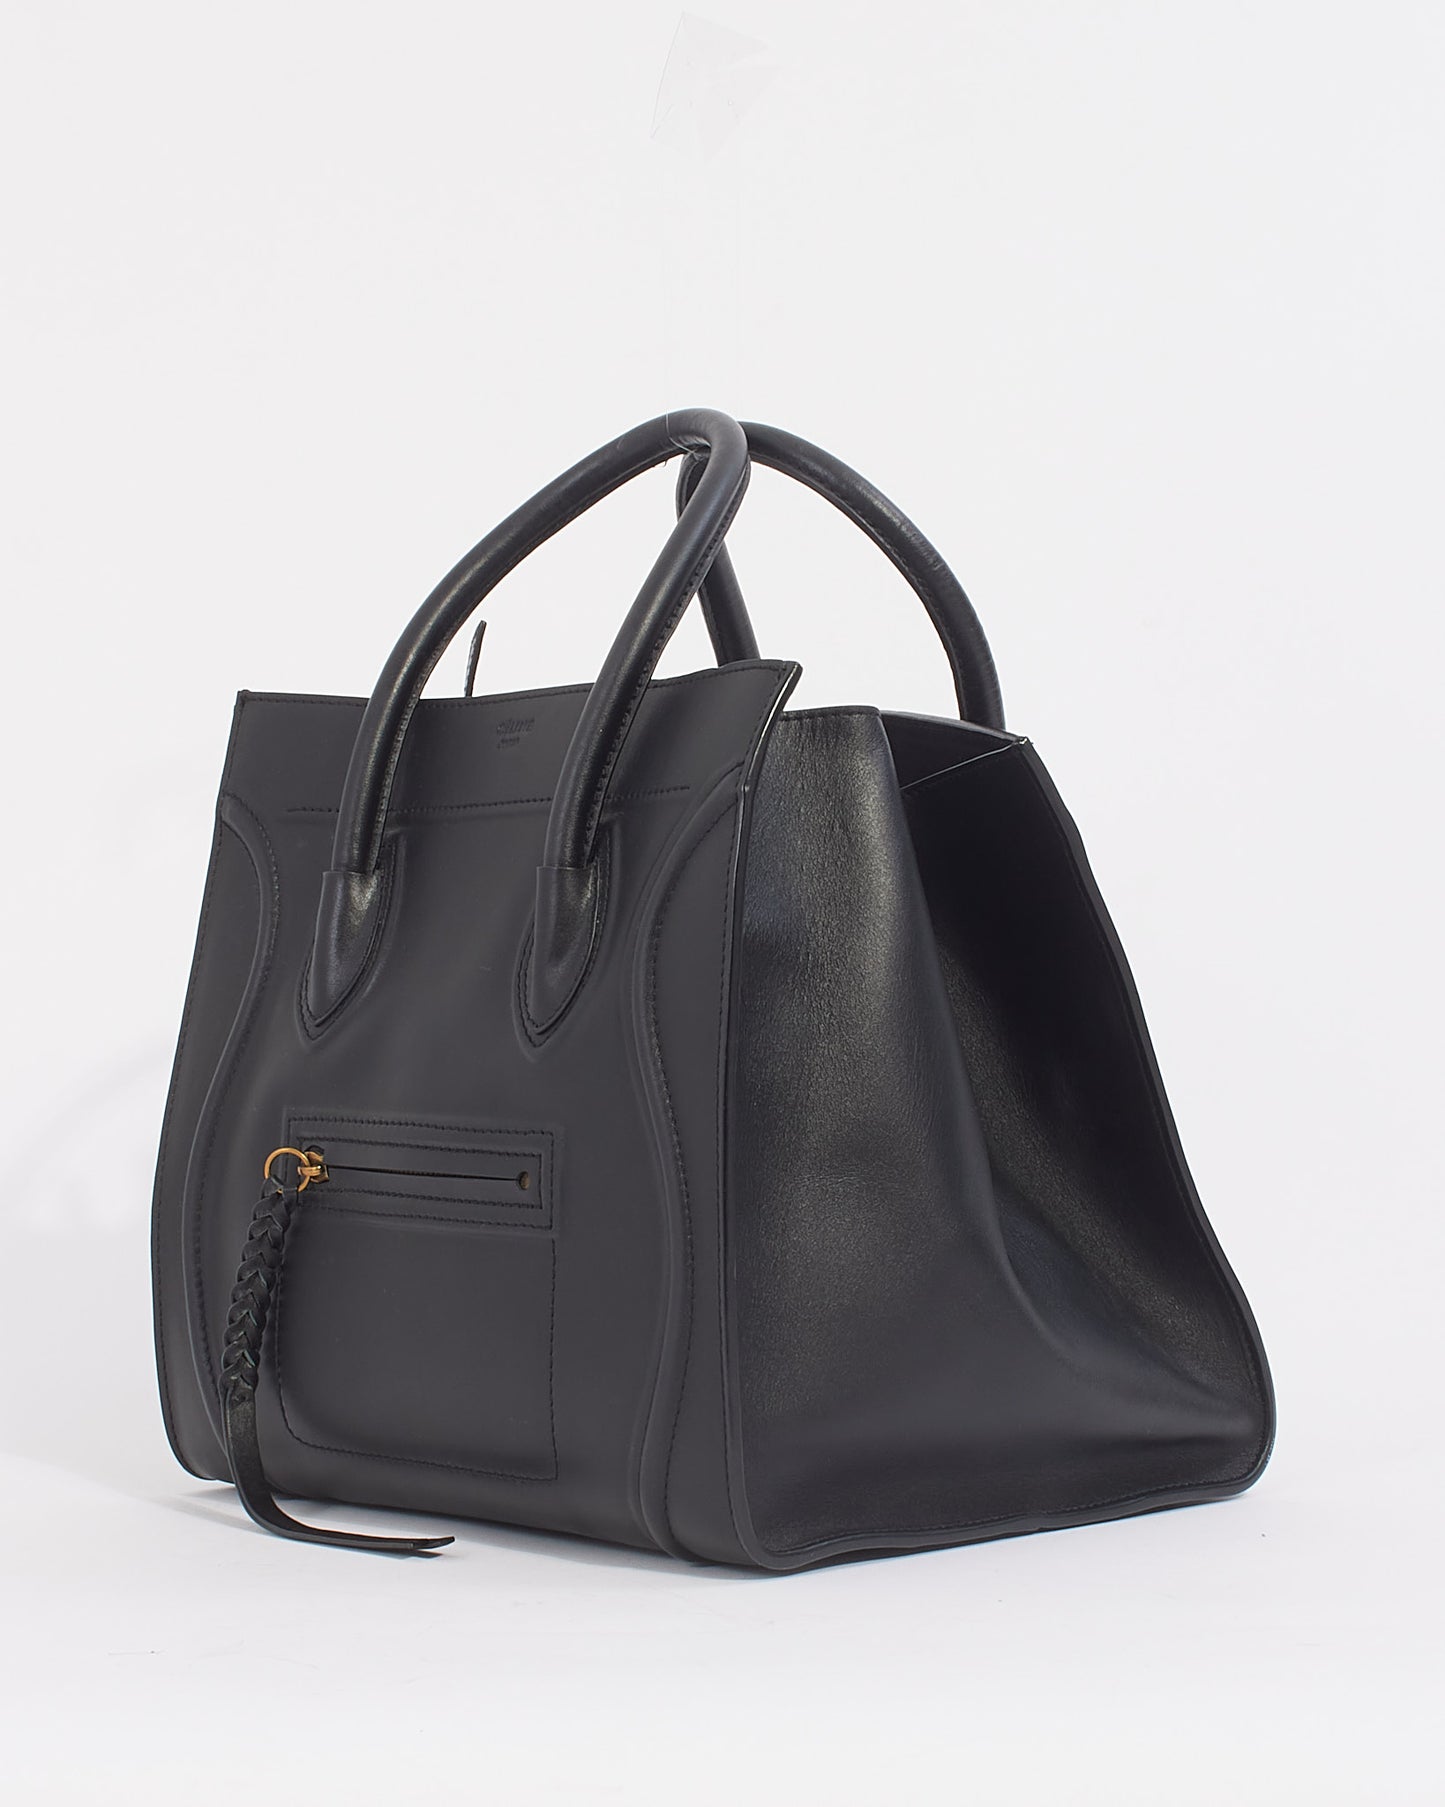 Celine Black Leather Phantom Luggage Medium Tote Bag